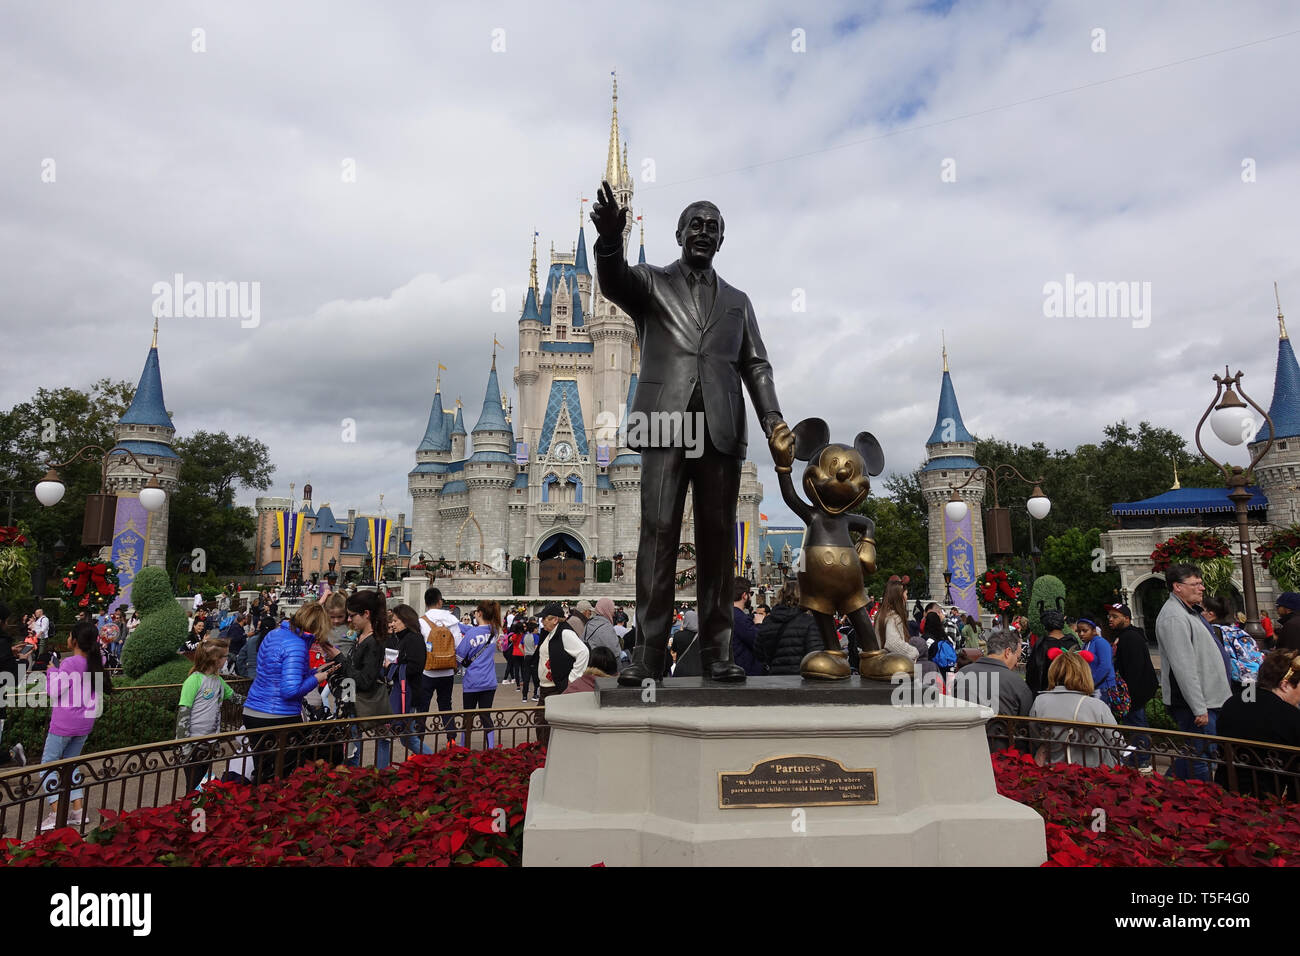 Orlando, FL/USA - 12/10/18: anteriore vista orizzontale di Walt Disney e Mickey Mouse Partner statua che si trova nella parte anteriore del castello Cinderellas a Disney World in o Foto Stock